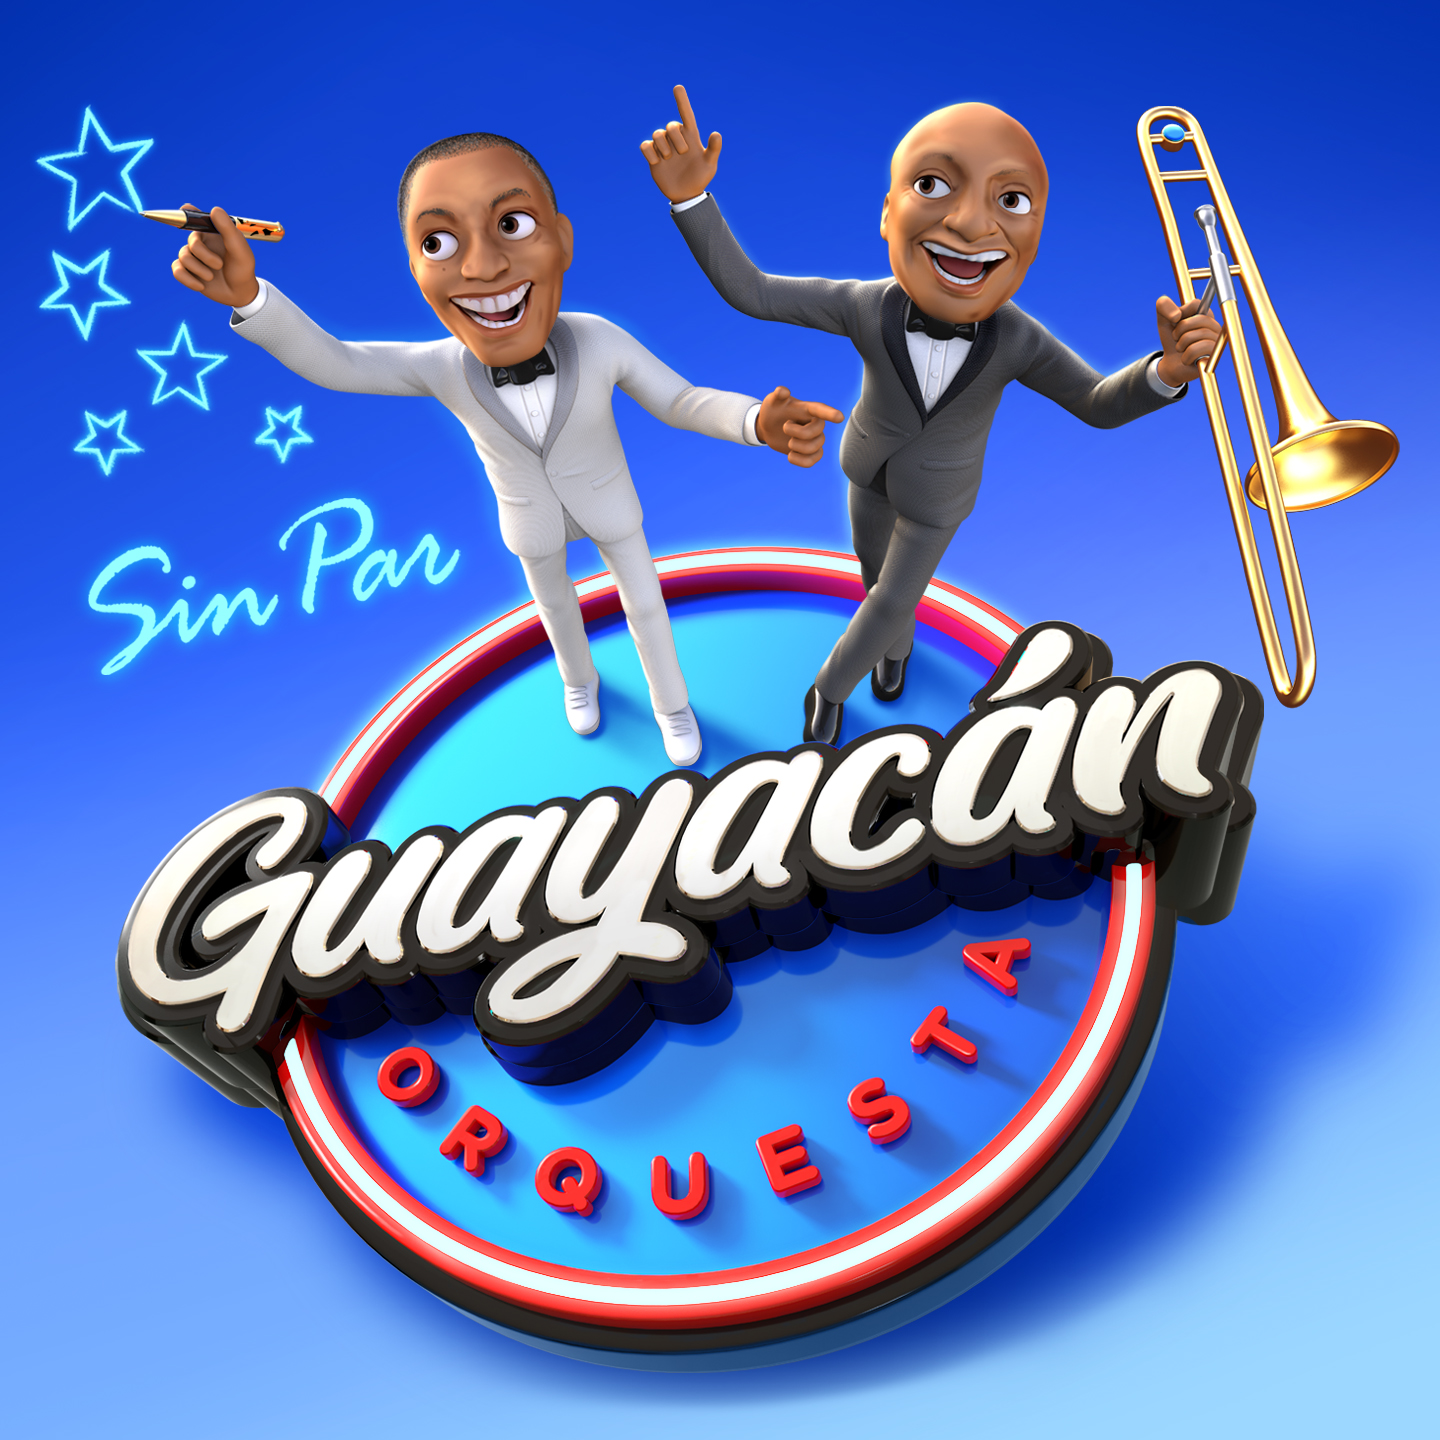 GUAYACÁN ORQUESTA ESTRENA SU ÁLBUM «SIN PAR», UN PROYECTO MUSICAL QUE APUNTA MUY ALTO EN EL MUNDO DE LA SALSA